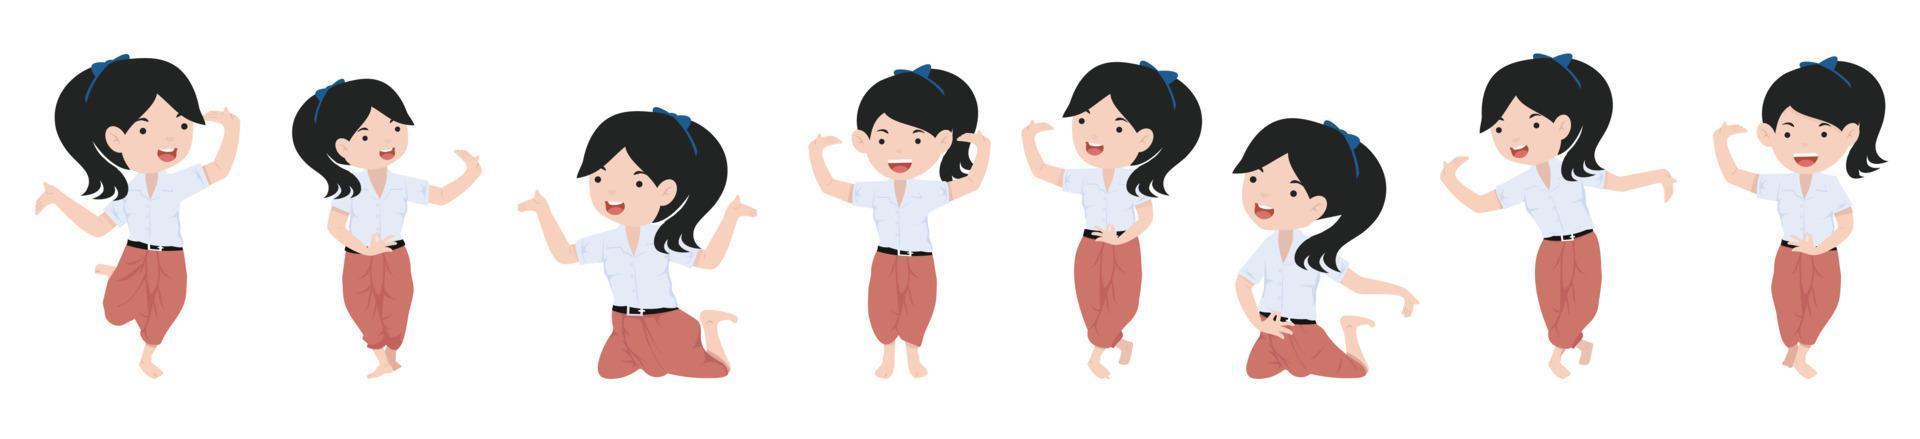 personaje de dibujos animados niña estudiante conjunto de bailarina tailandesa tradicional vector